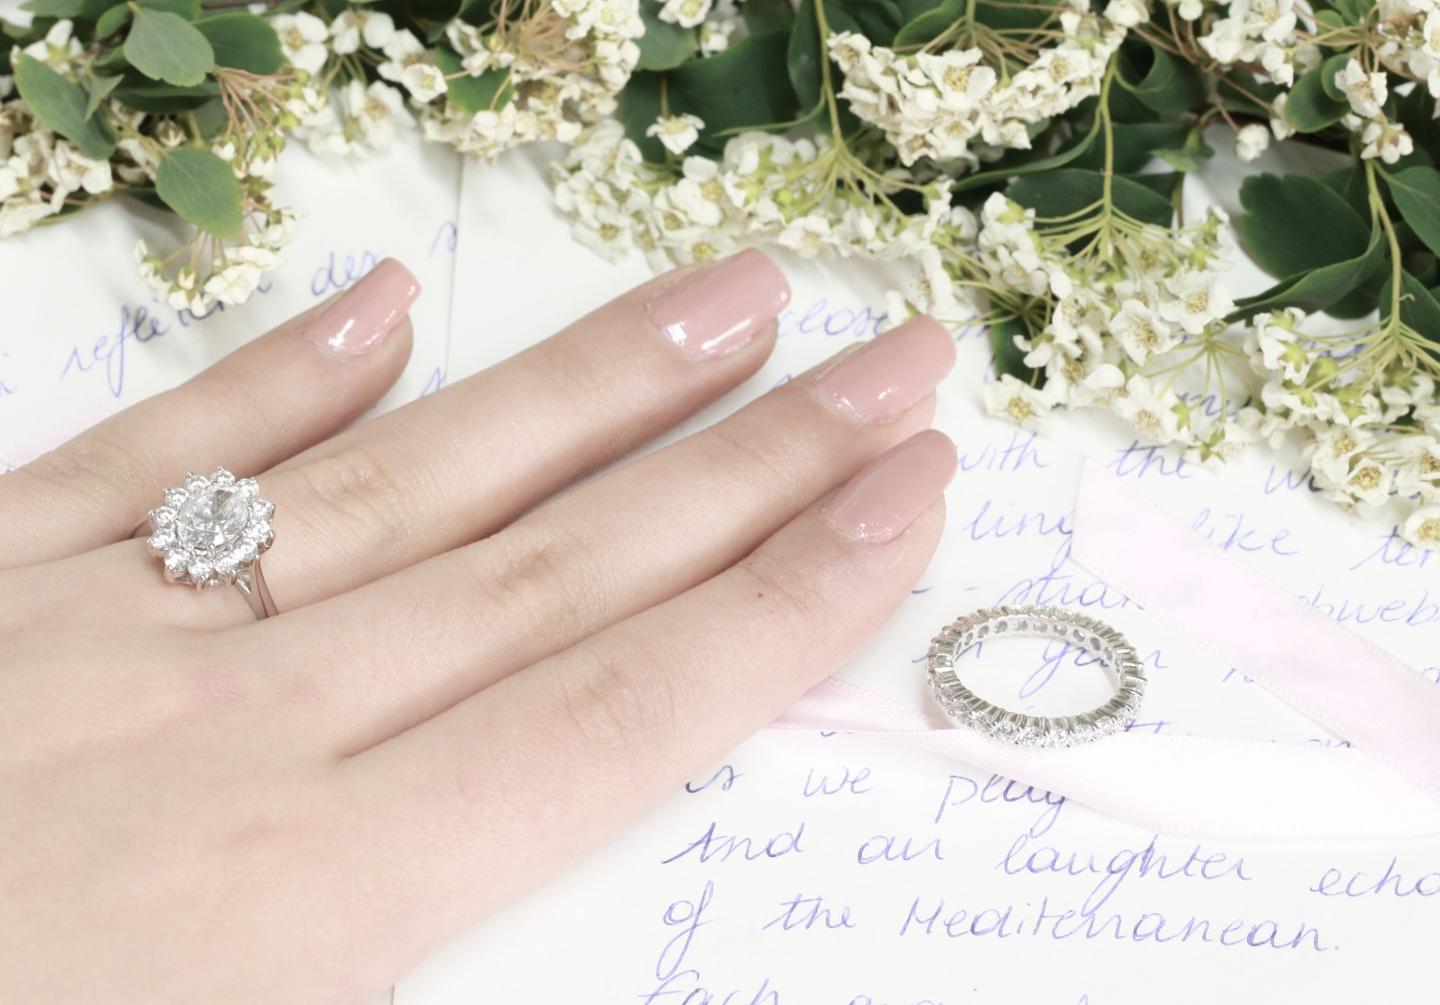 英國人從哪裏獲得婚禮主題和選購訂婚戒指的靈感？ 